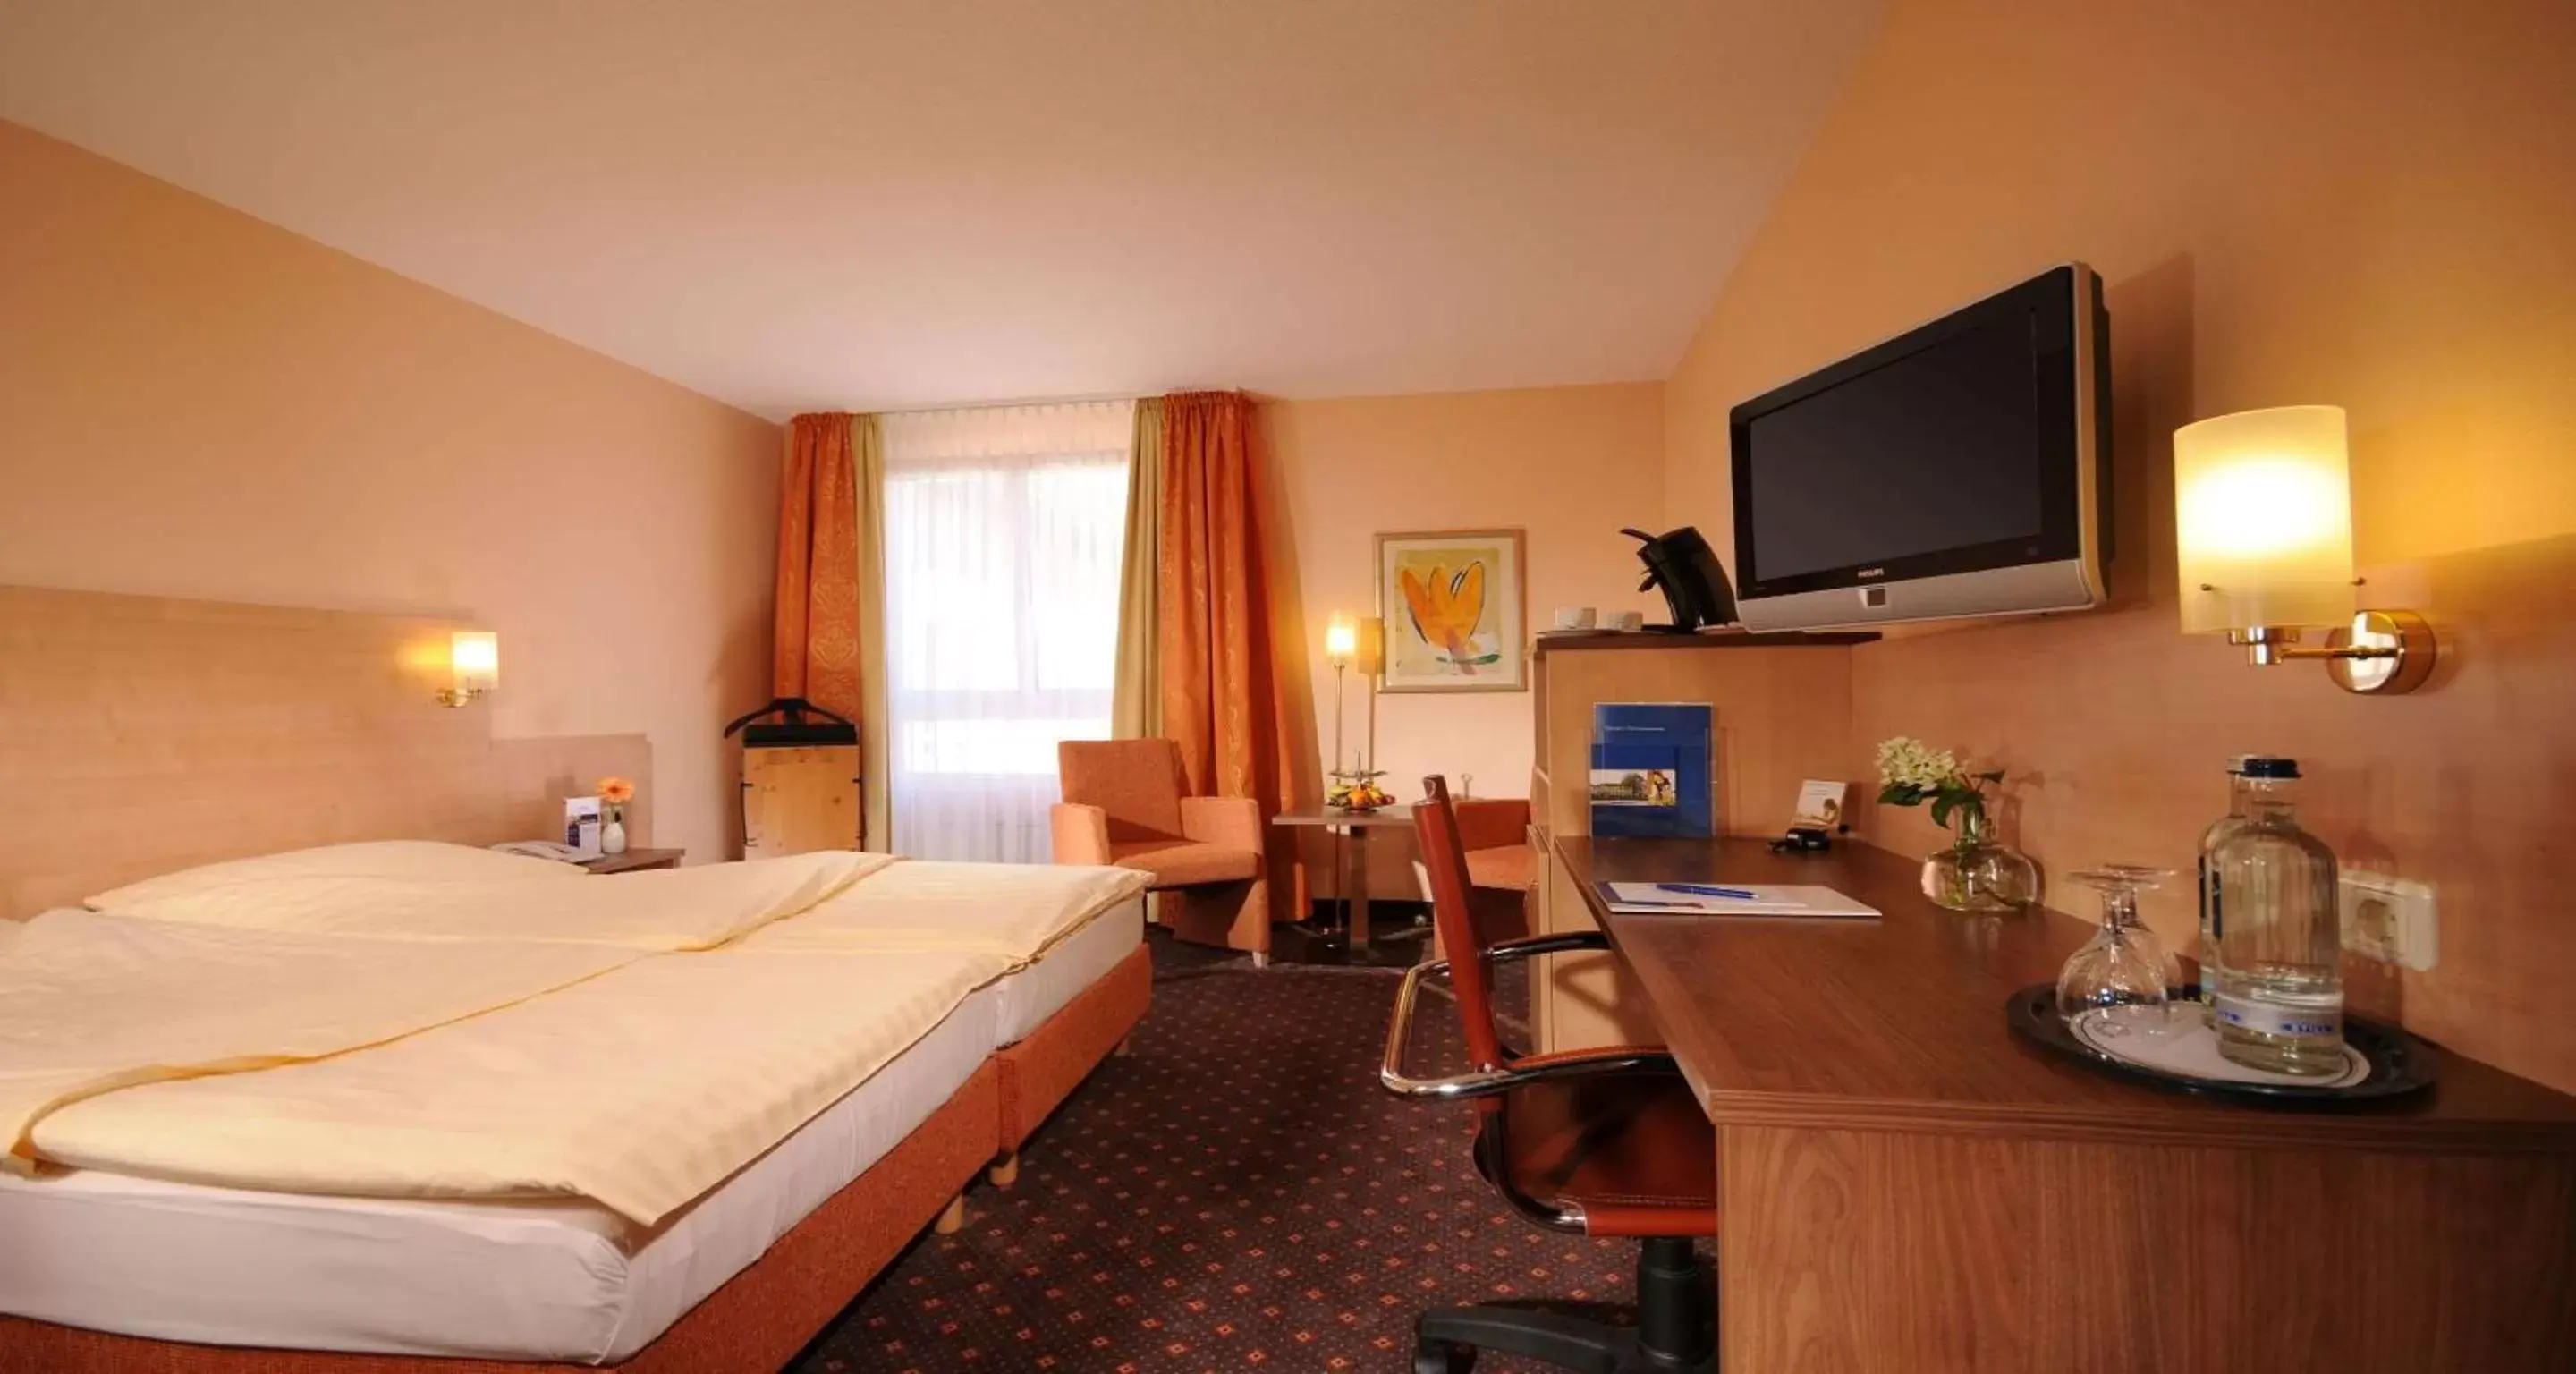 Bedroom, TV/Entertainment Center in Sure Hotel by Best Western Hilden-Düsseldorf